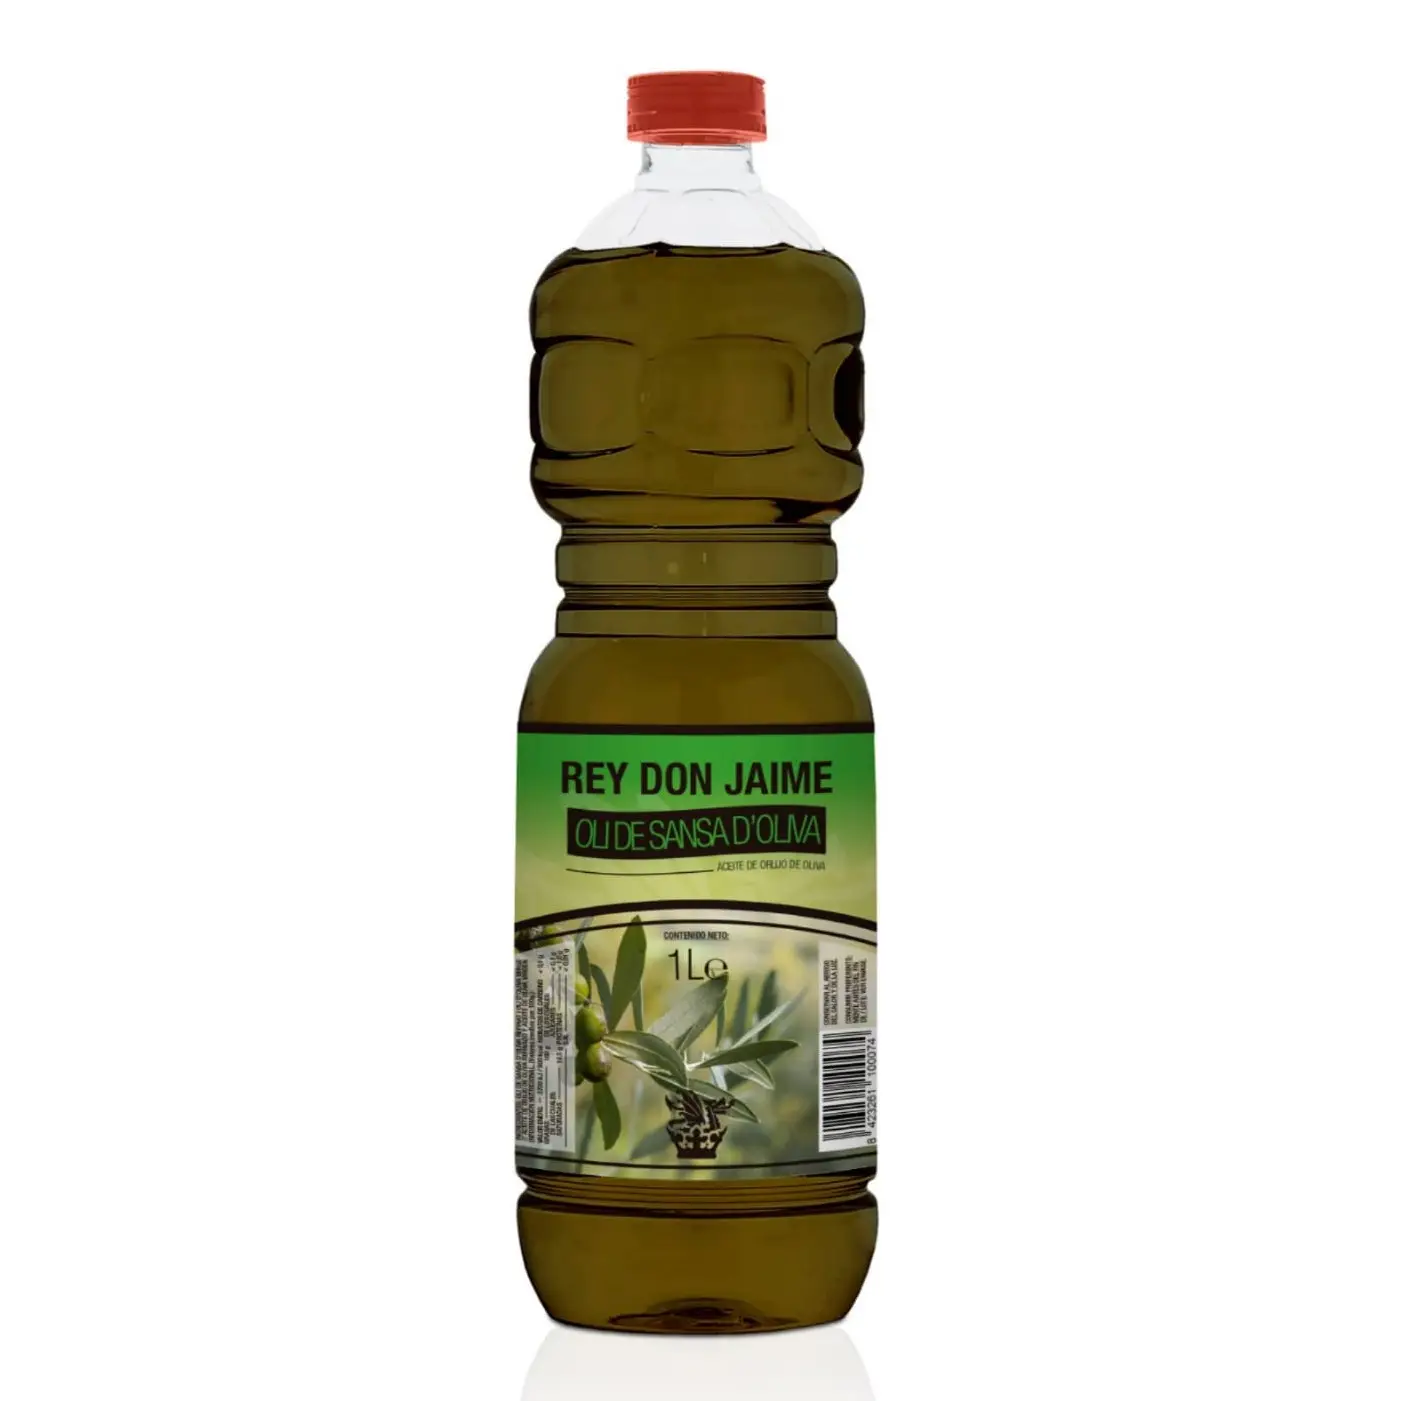 Aceite de orujo de oliva de alta categoría española, aceite de orujo de Pain, remium, lastic, ackaging, ick, Ype, rigin